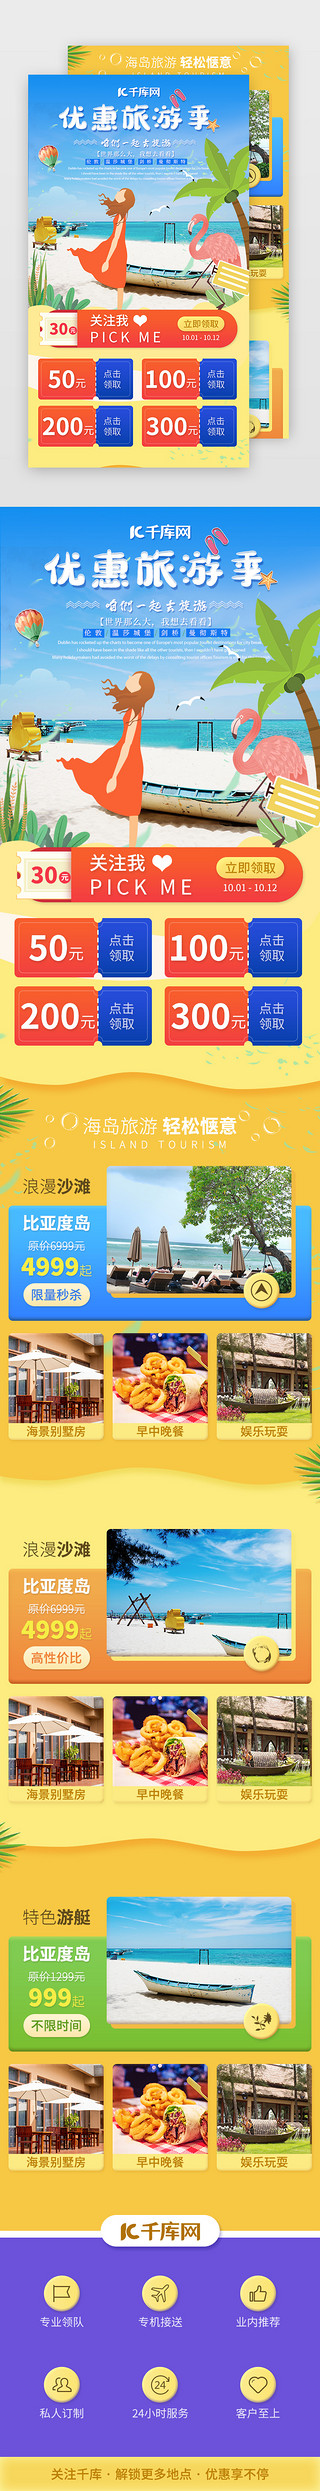 旅游旅行UI设计素材_国庆旅游旅行景点介绍H5